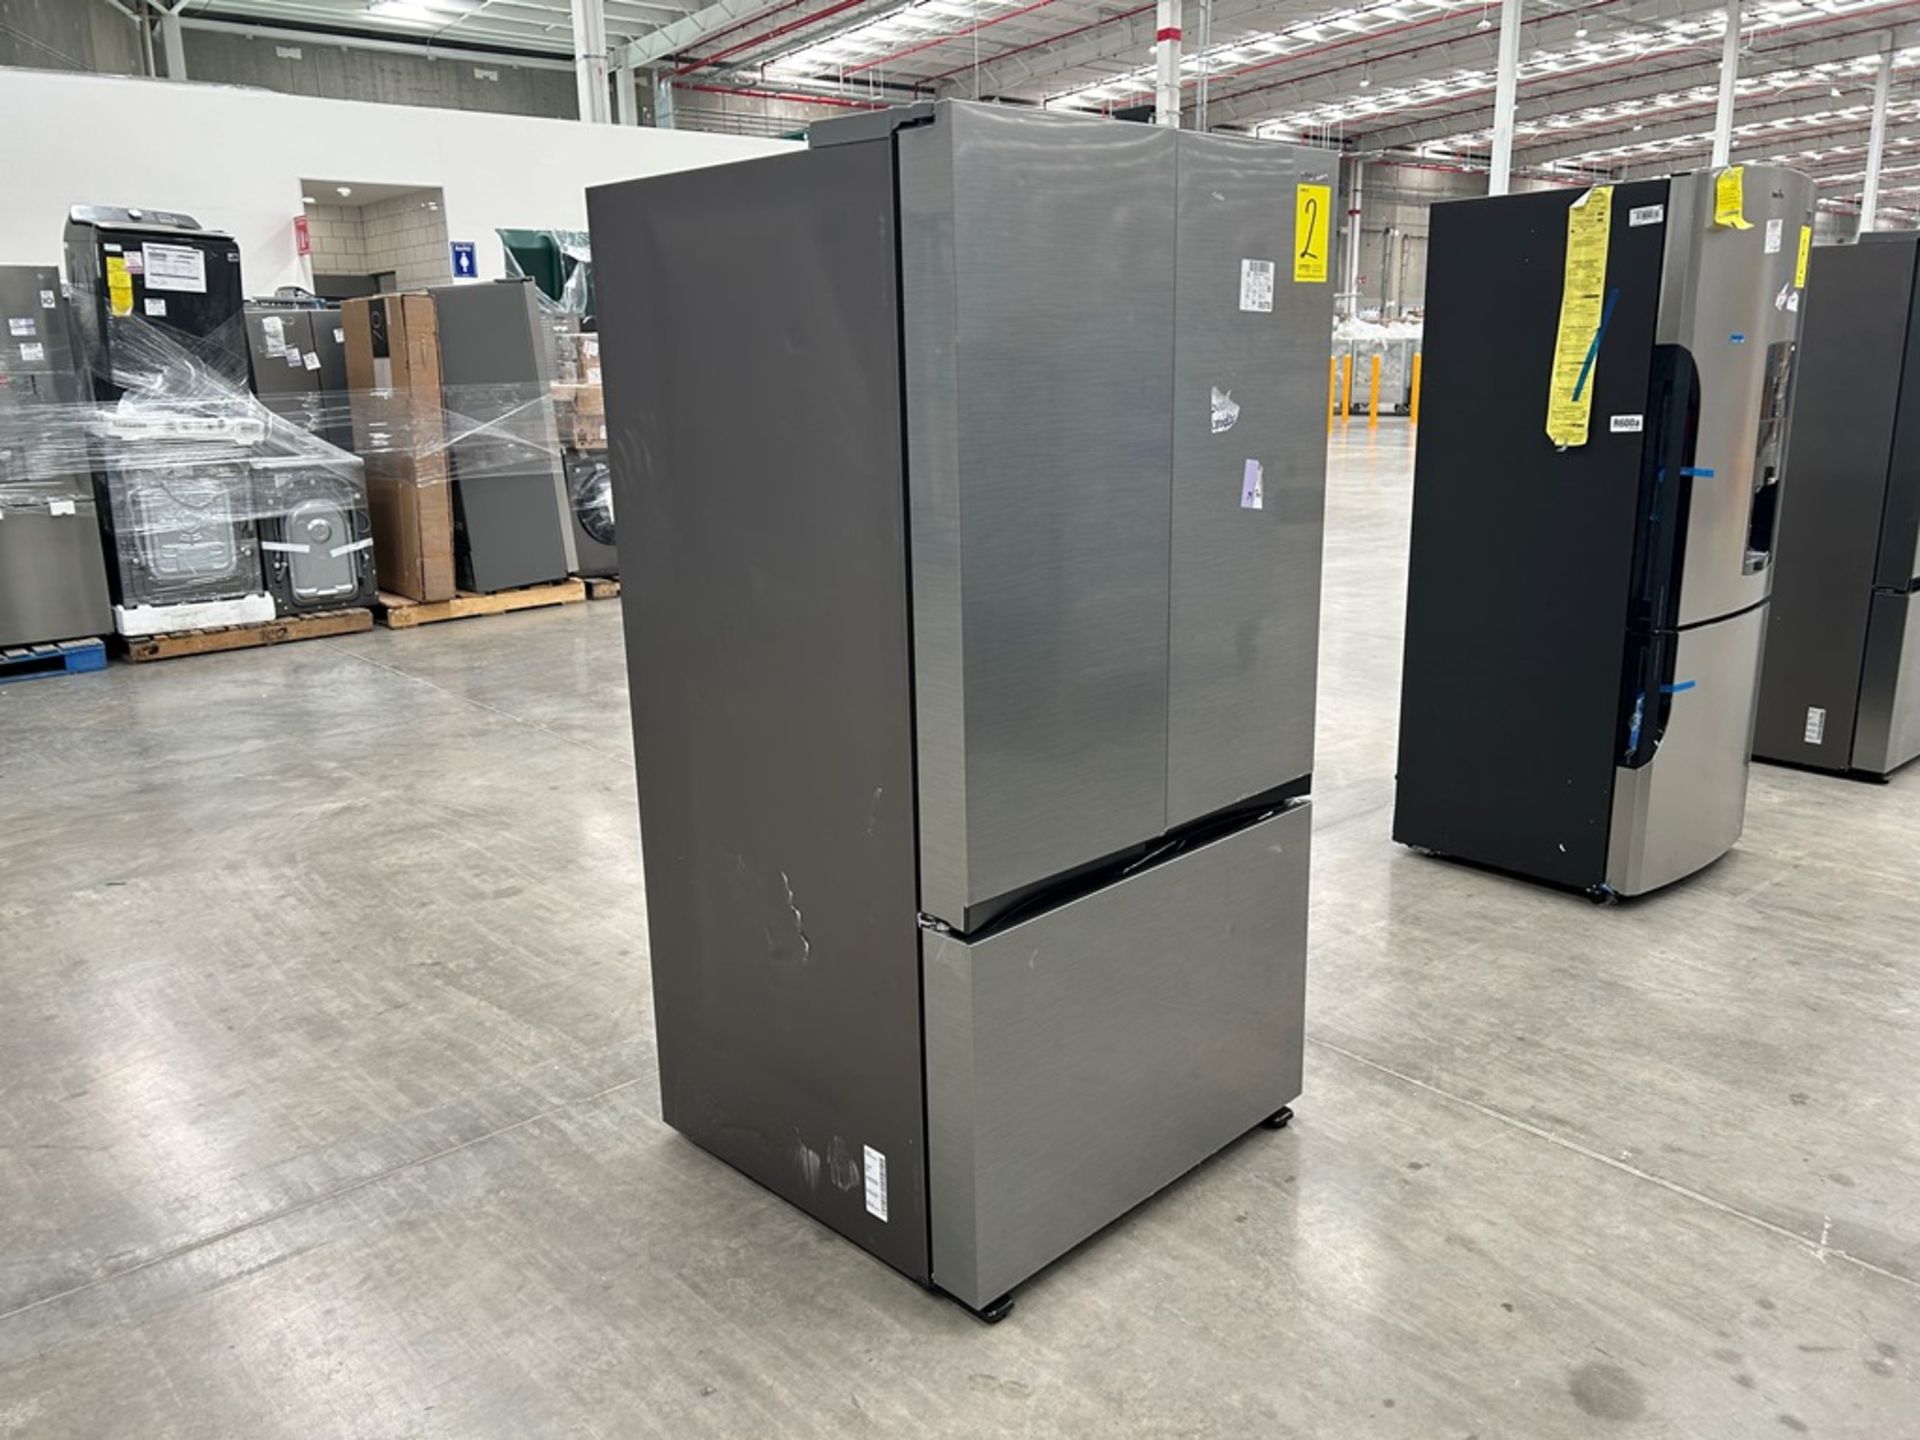 1 refrigerador Marca SAMSUNG, Modelo FR32CG5A10S9EM, Serie 1494L, Color GRIS (No se asegura su func - Image 3 of 5